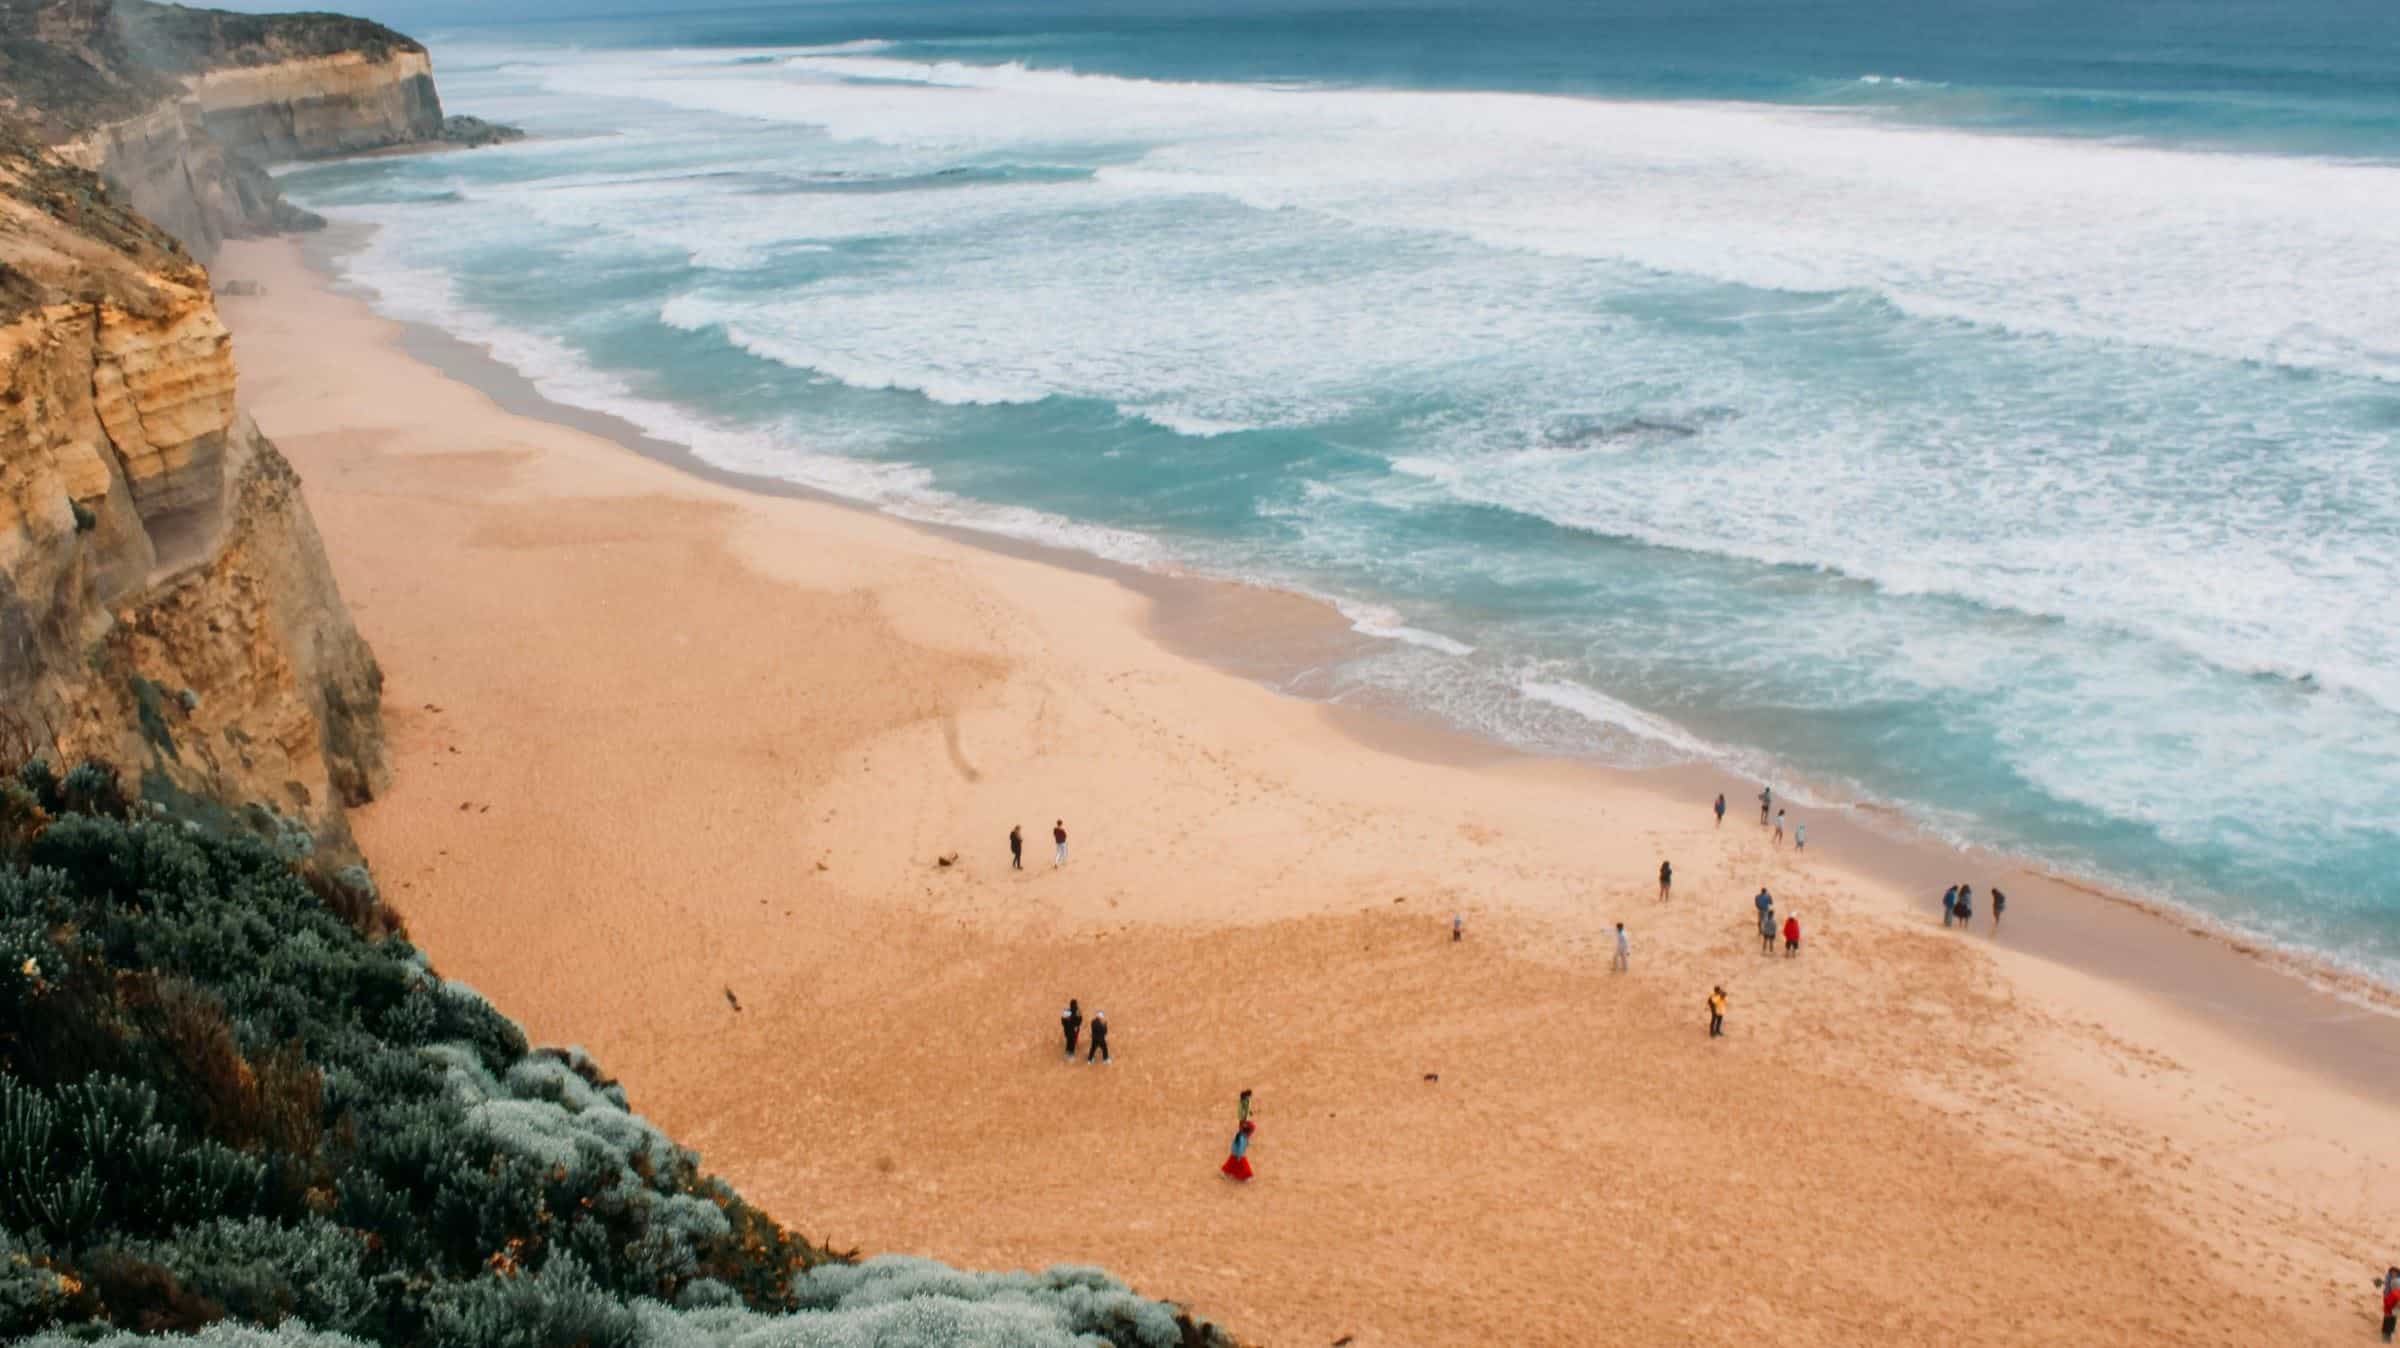 La playa es uno de los destinos más visitados en semana santa | Imagen cortesía